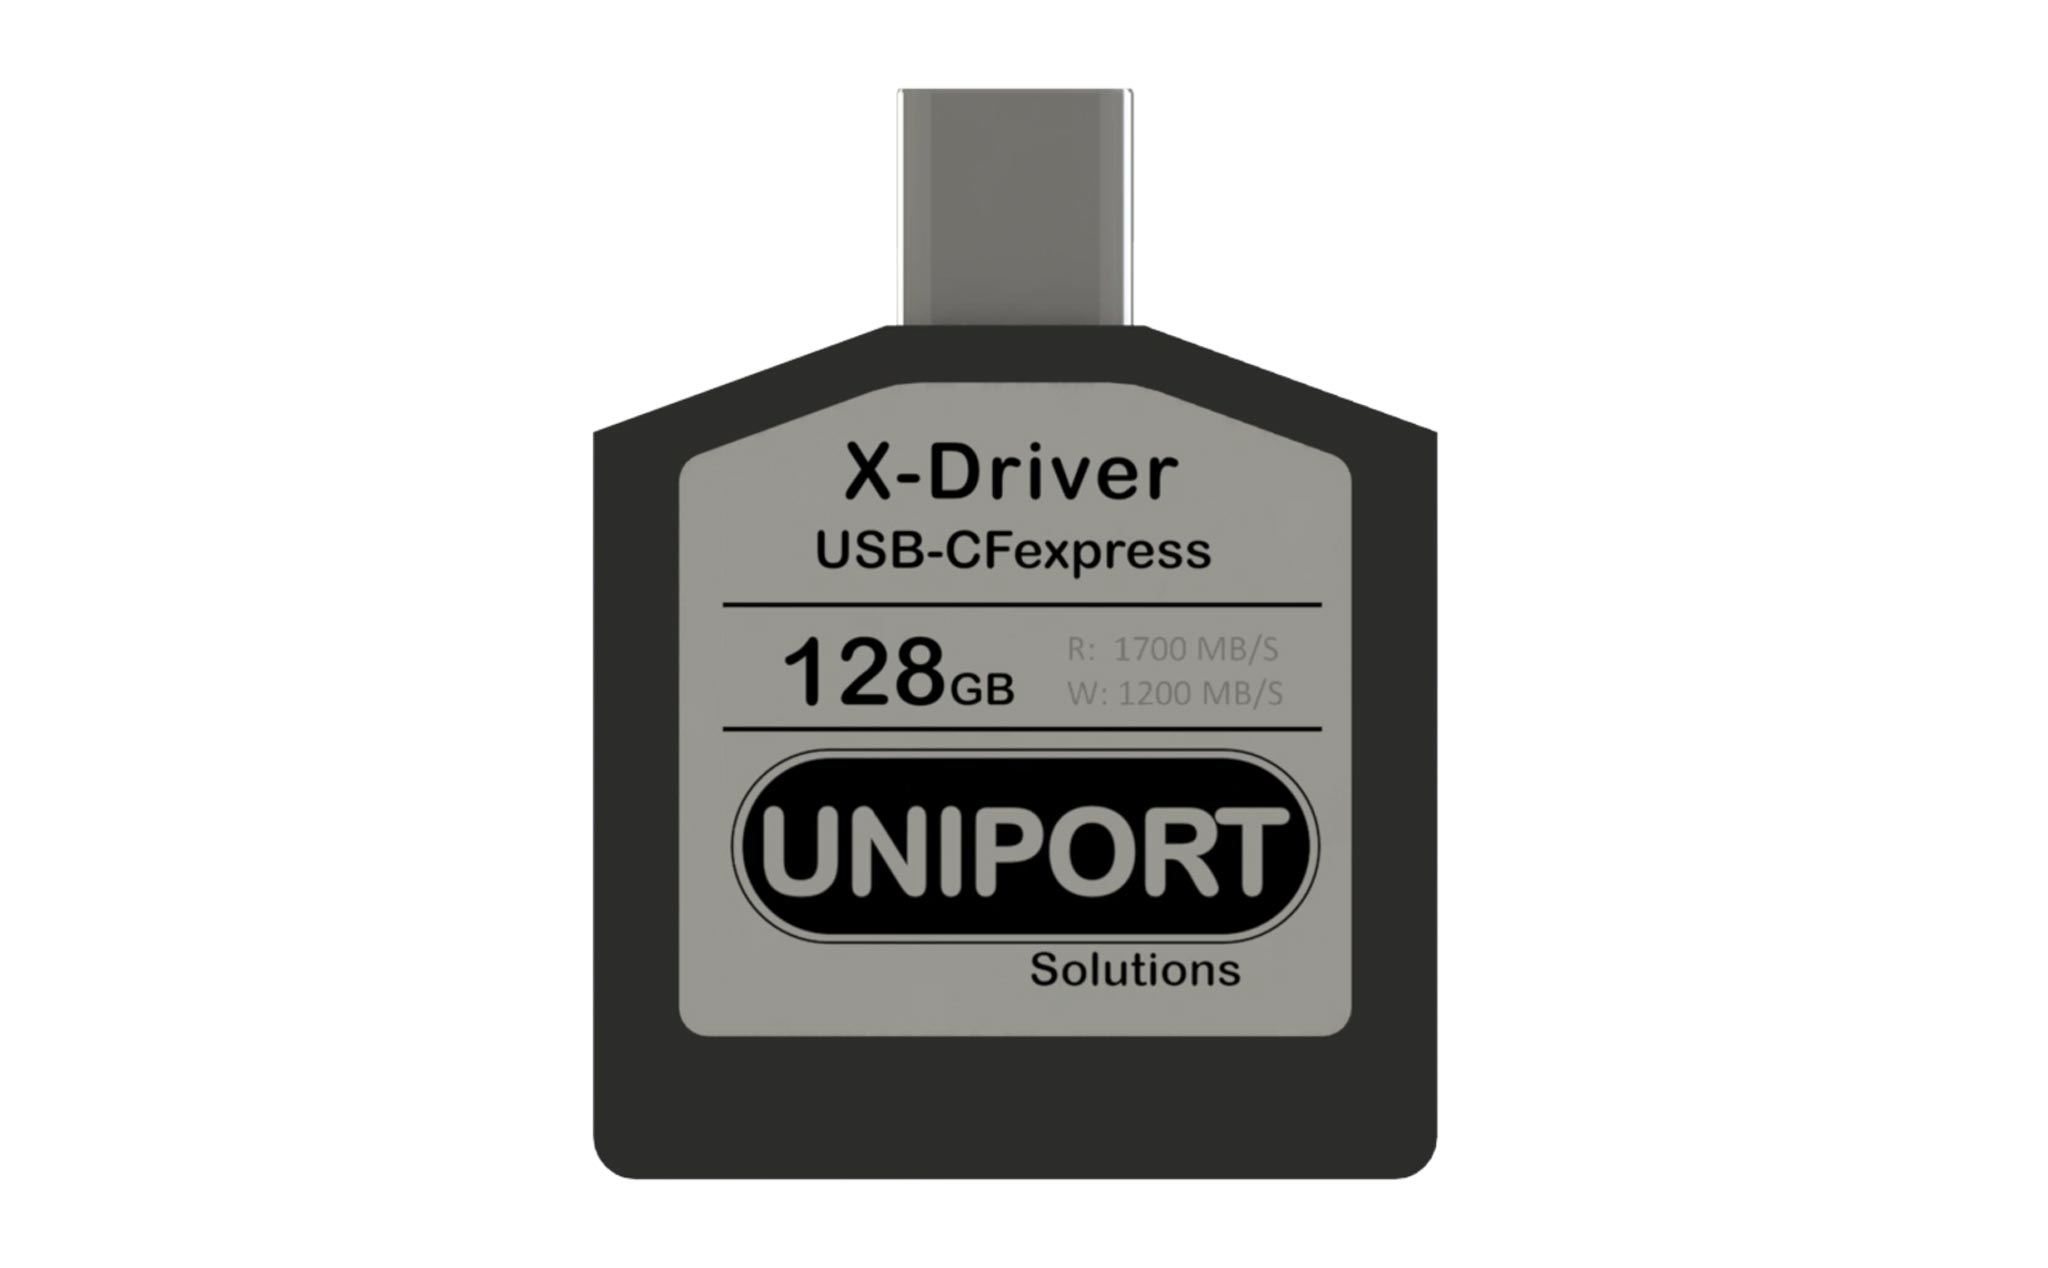 X-Driver CFexpress tích hợp cổng USB-C trên thẻ